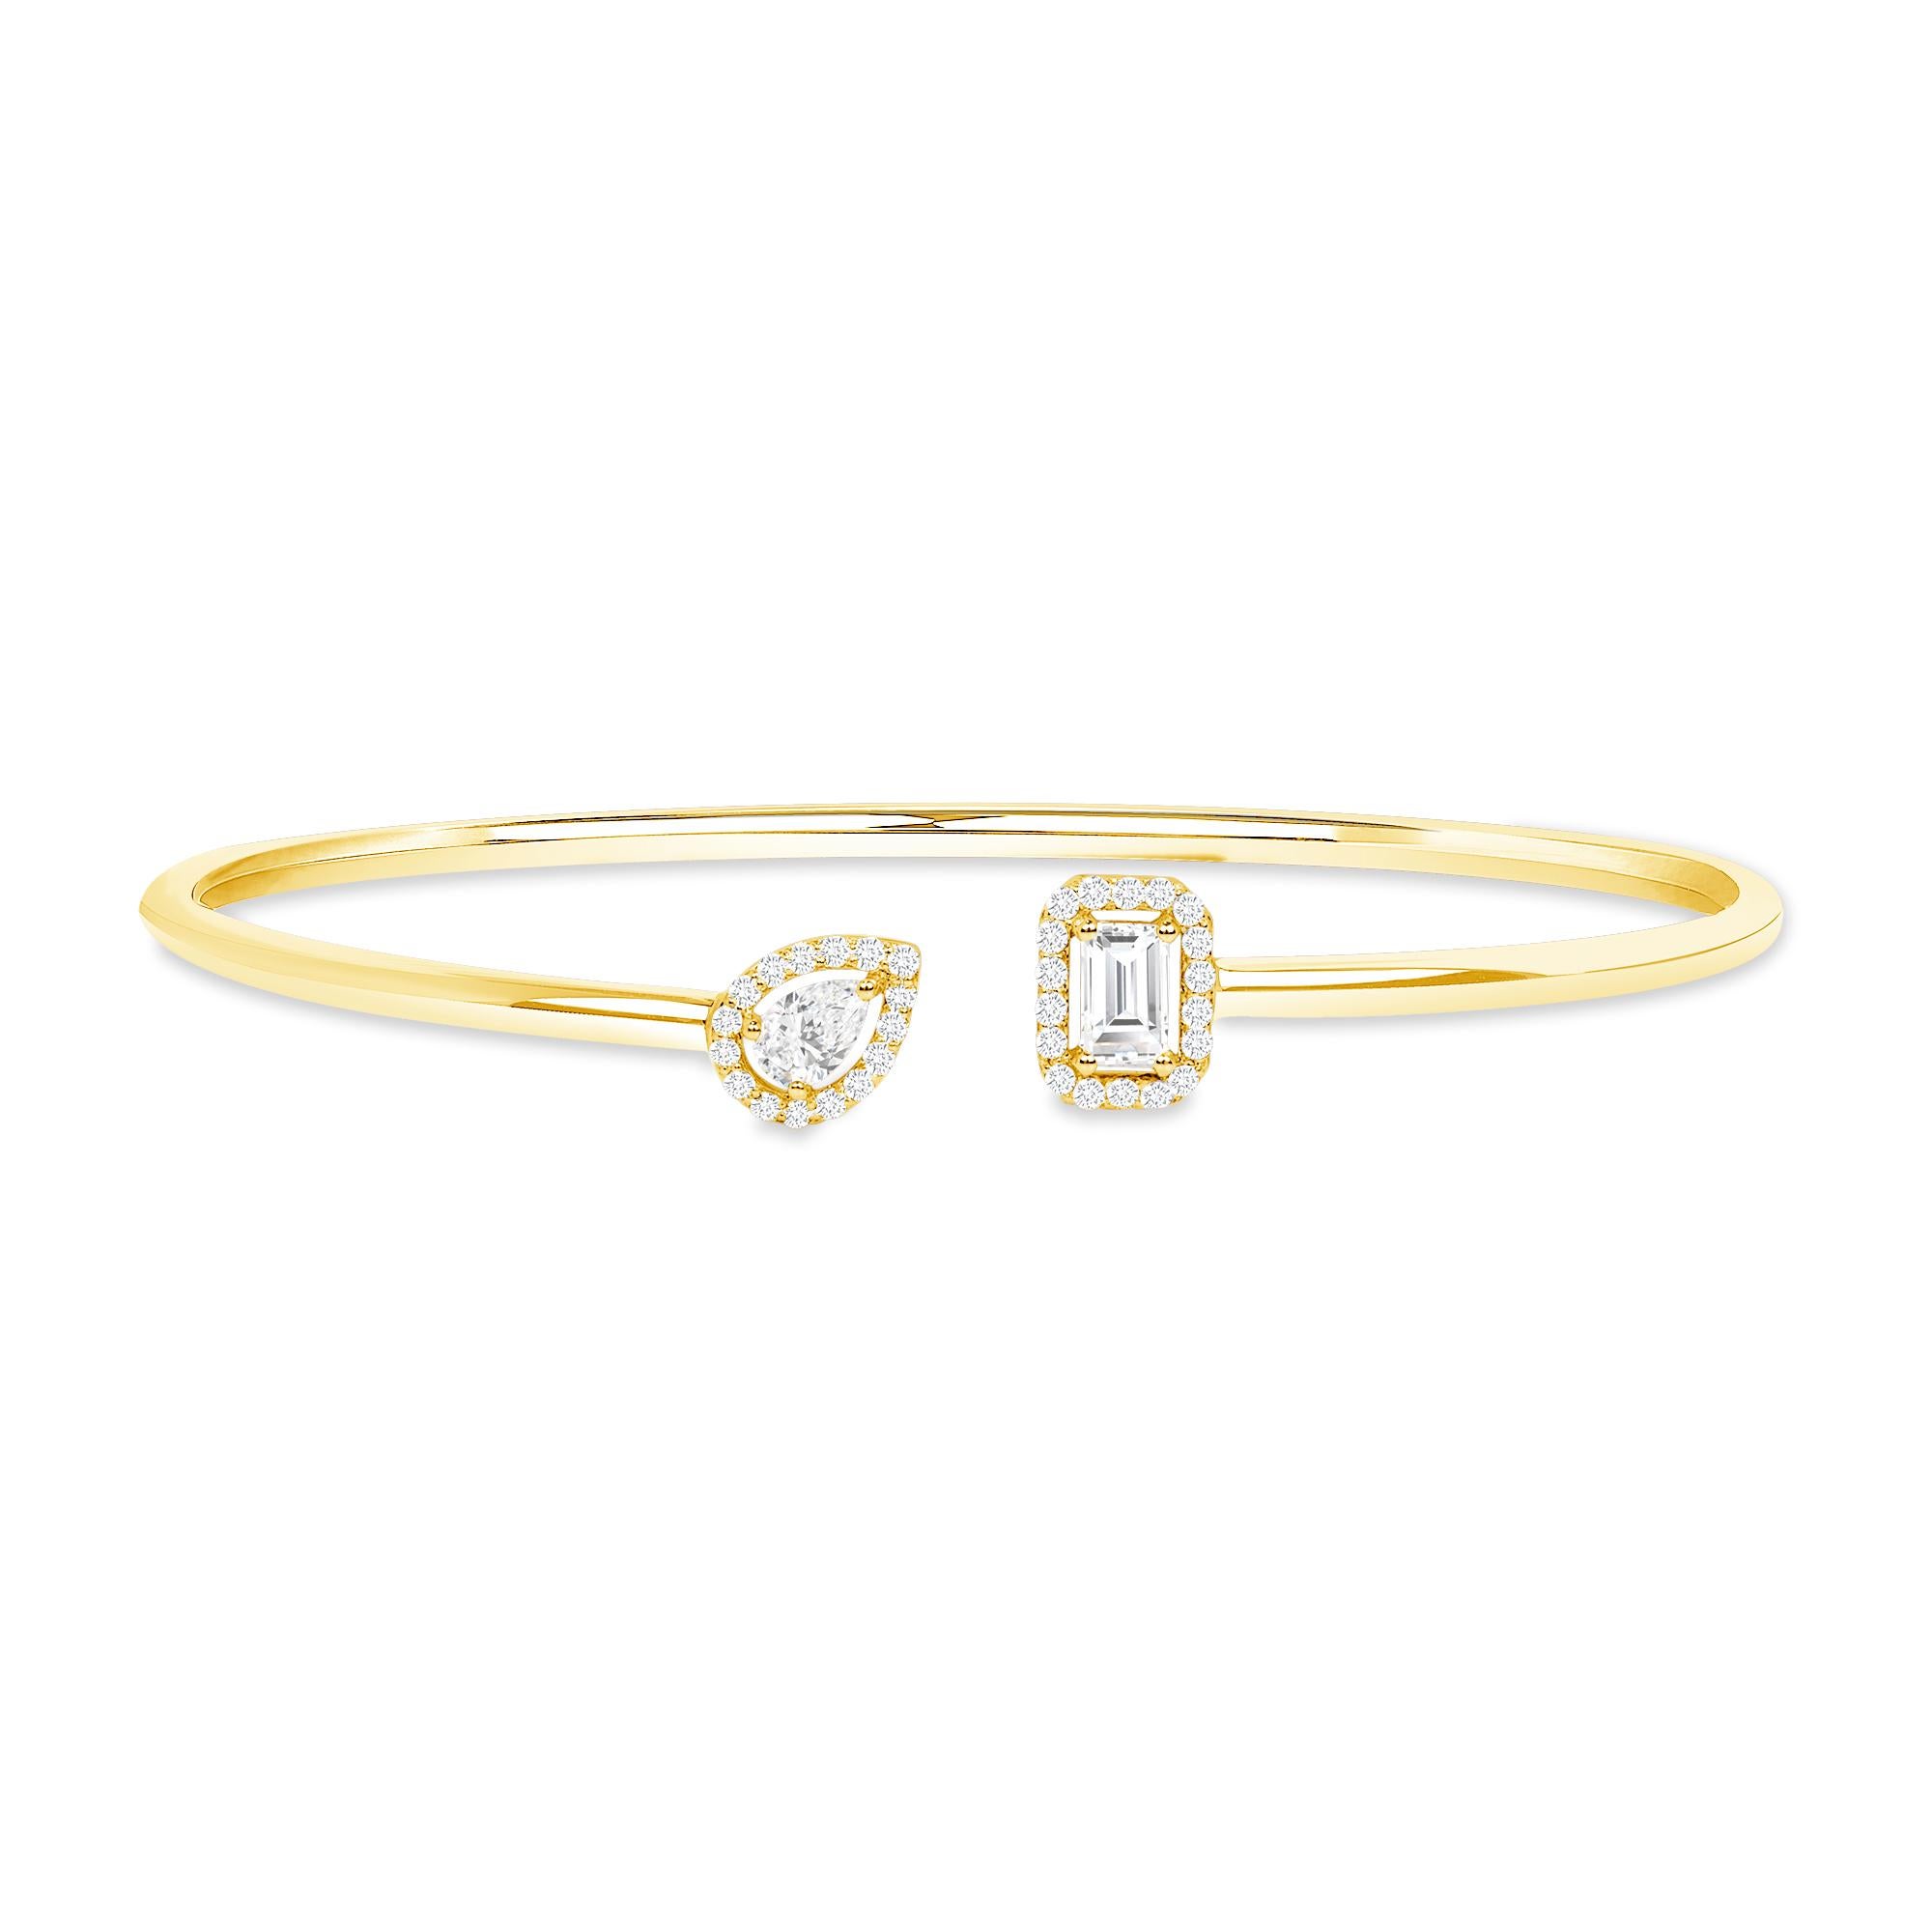 Bracelet souple Toi et Moi en or 18k, poire et émeraude, diamant Toi et Moi

Cet élégant bracelet de diamants en or 18 carats met en valeur deux styles de taille : la taille poire et la taille émeraude, réunies par un éblouissant entourage de